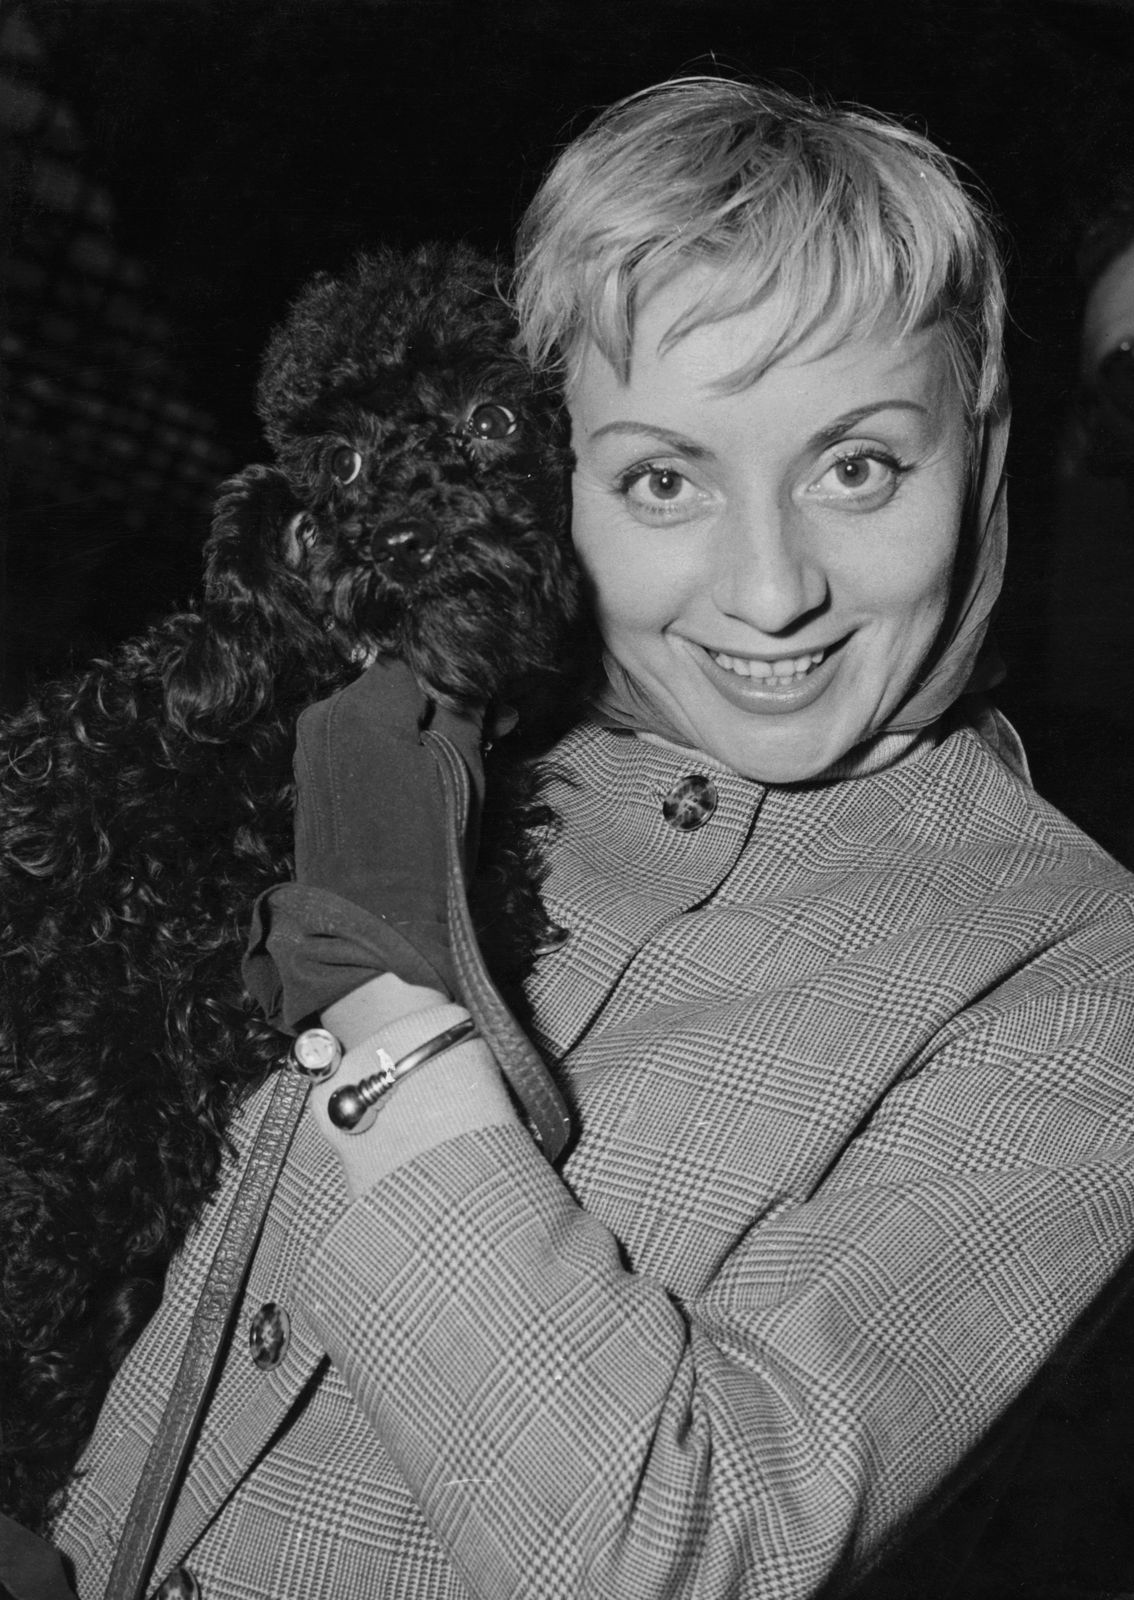 Annie Cordy arrive à la Gare du Nord à Paris, France, 30 septembre 1957. | Photo : Getty Images